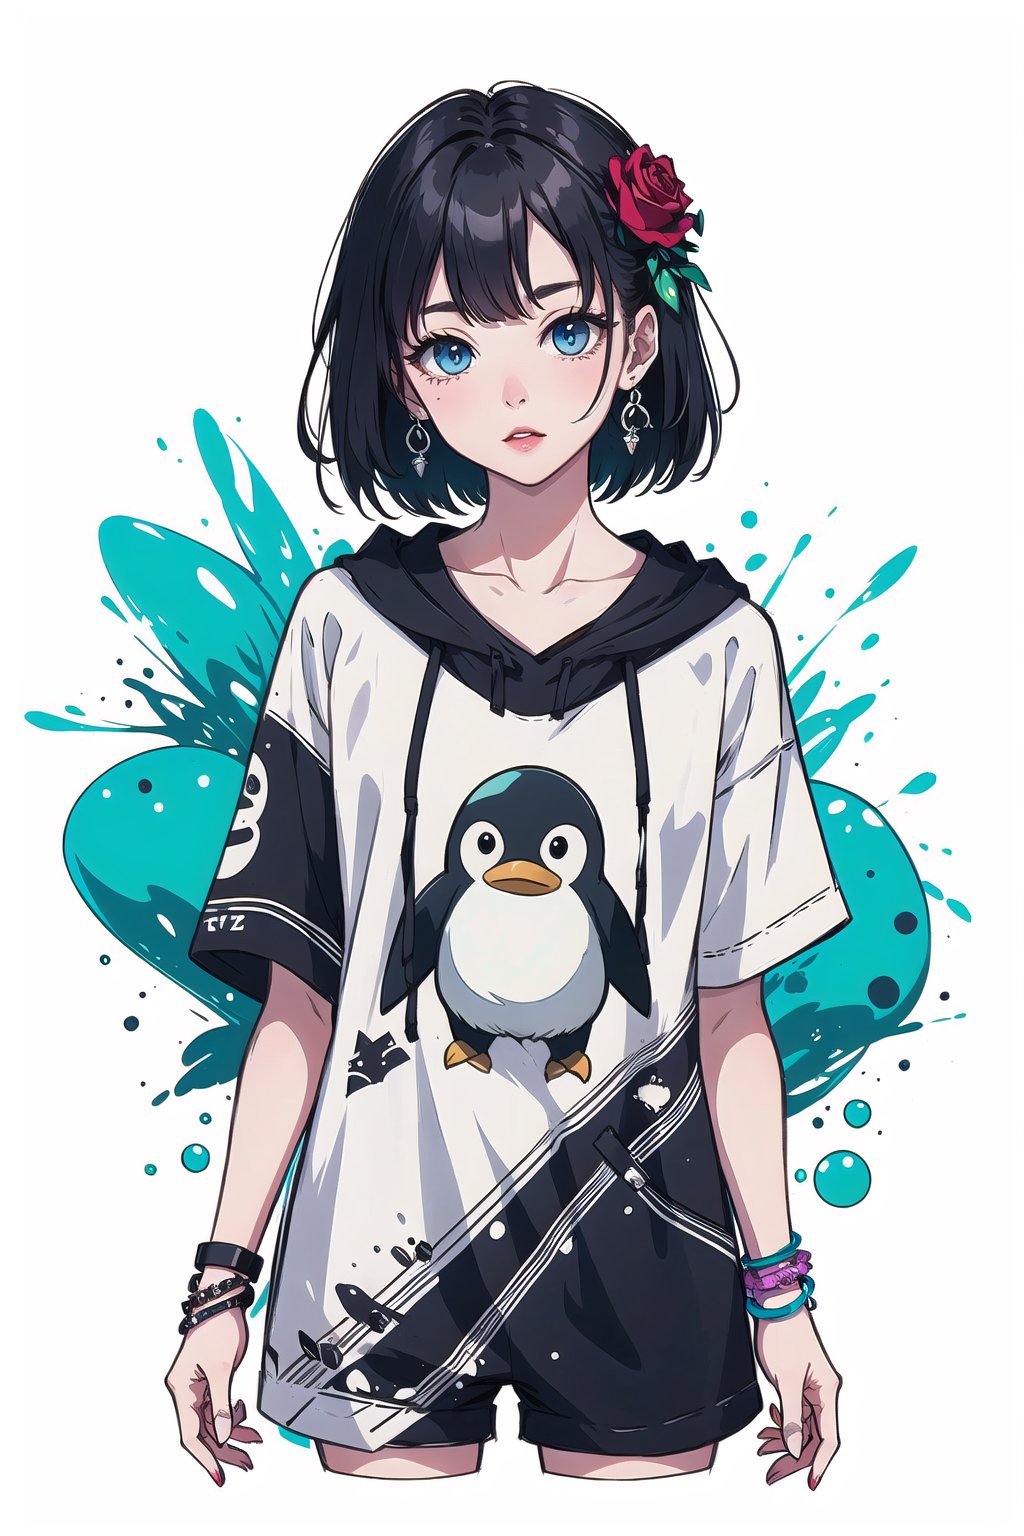 penguin girl, rose print, flower bracelets graffiti,design,Grt2c,white background,Enhance,Worldwide trending artwork